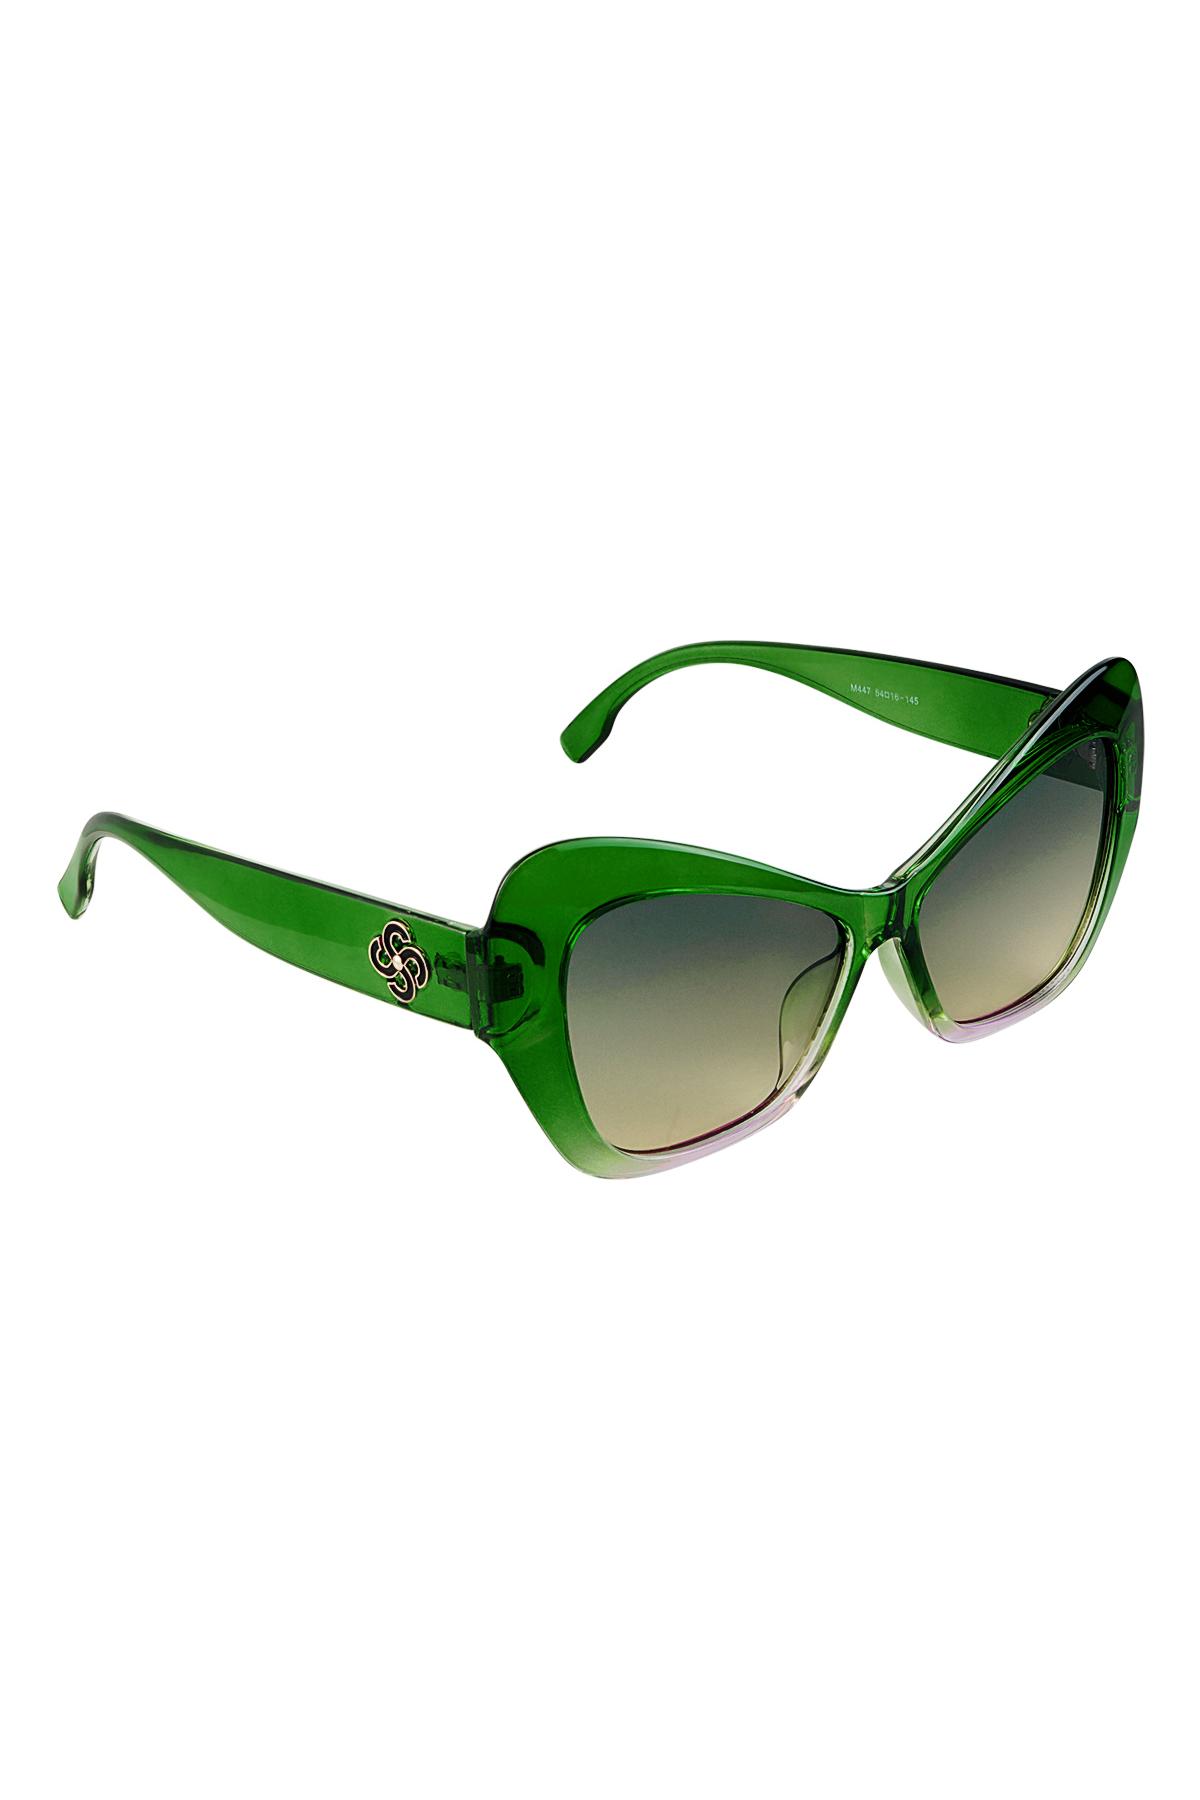 Déclaration de lunettes de soleil Vert PC Taille unique